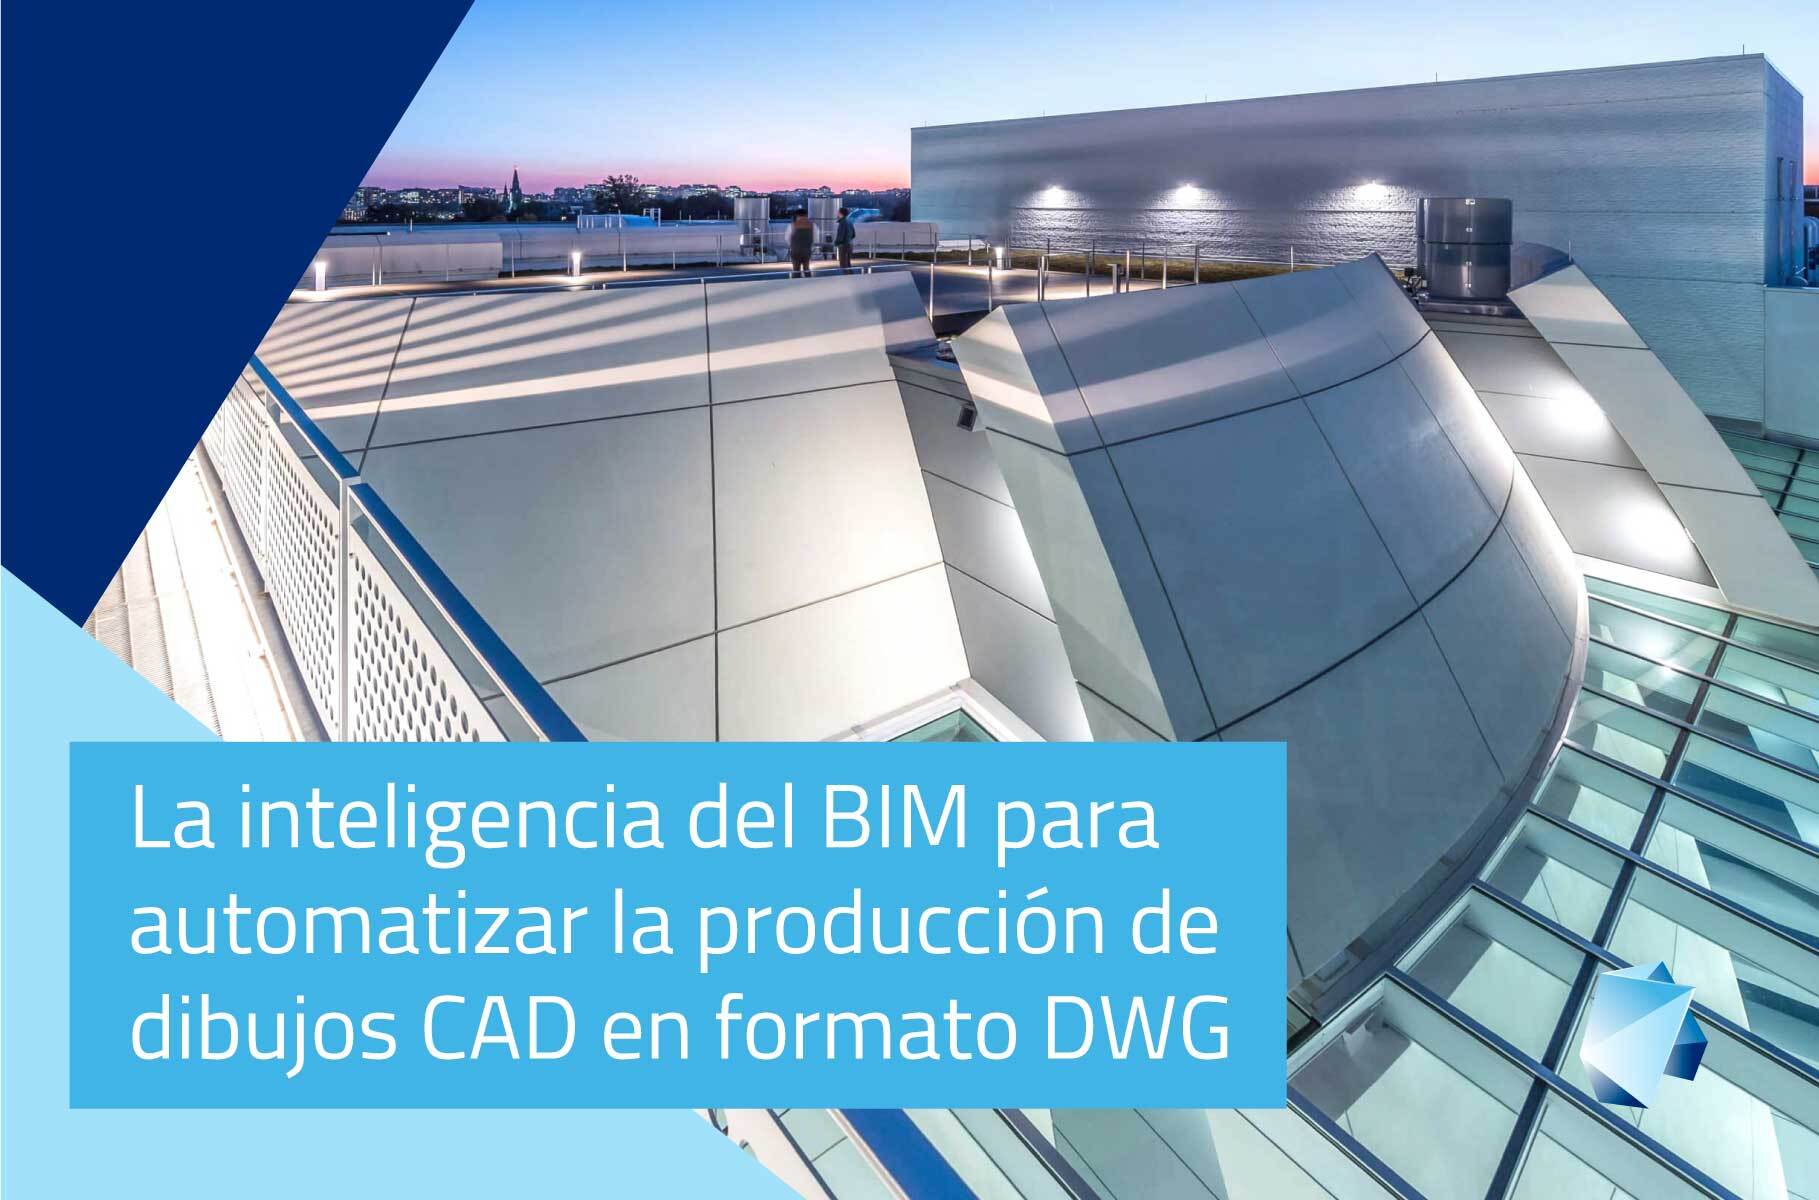 La inteligencia del BIM para automatizar la producción de dibujos CAD en formato DWG